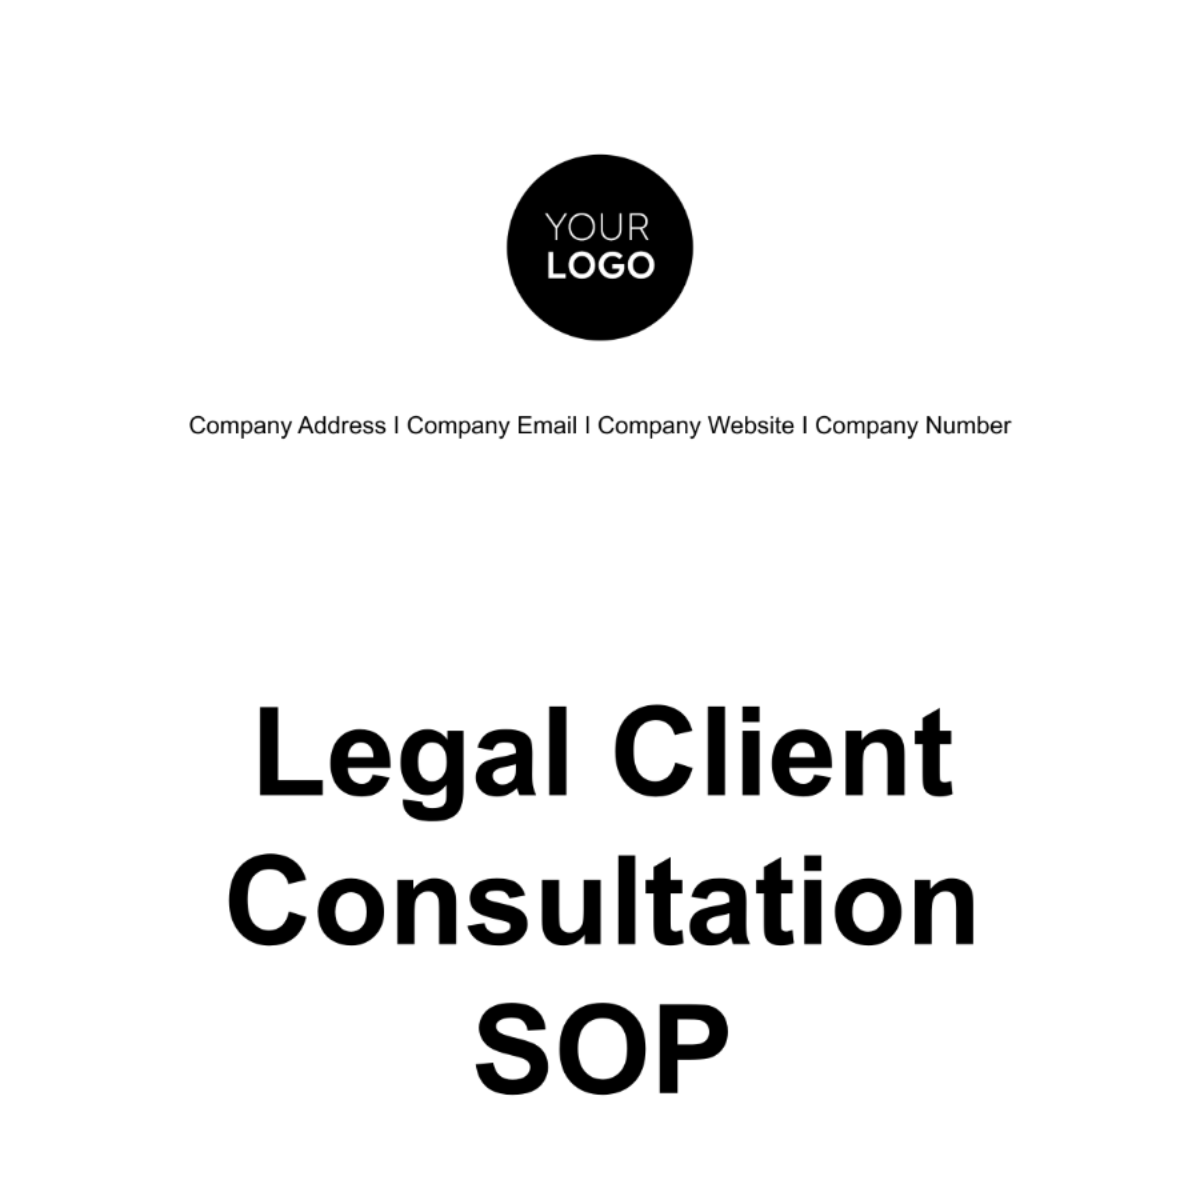 Legal Client Consultation SOP Template